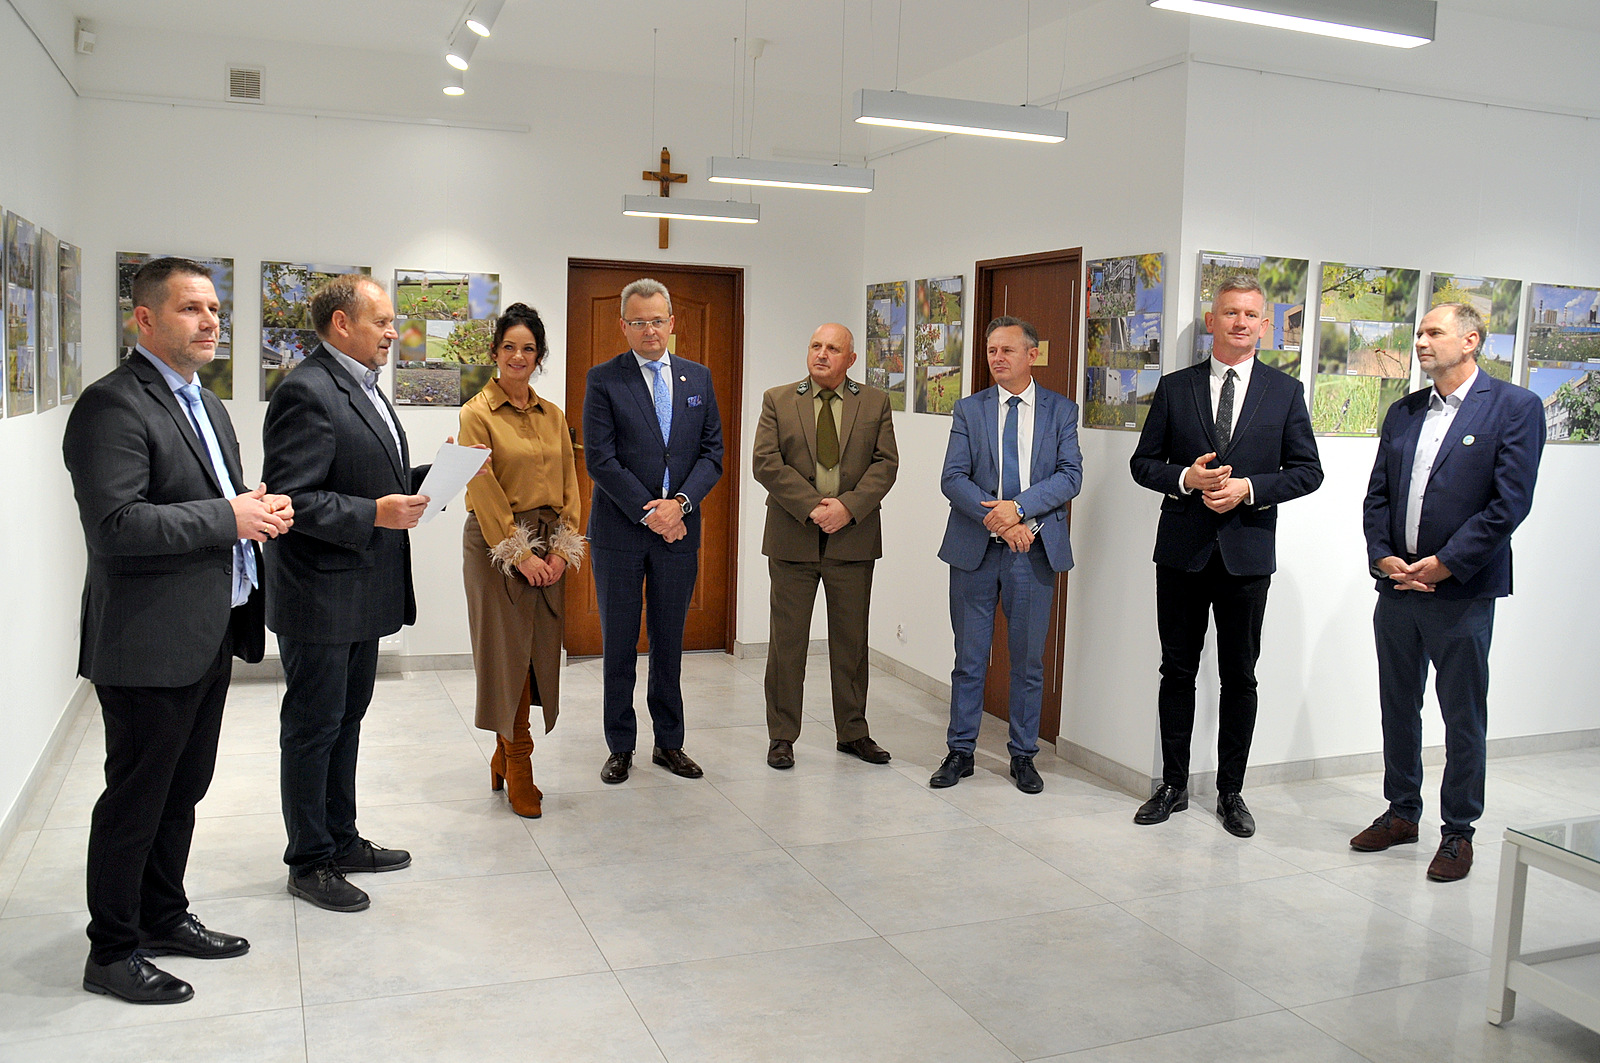 Oficjalnego otwarcia wystawy dokonał burmistrz Zwolenia Arkadiusz Sulima. Na zdjęciu stoi 8 osób - 7 mężczyzn i jedna kobieta.